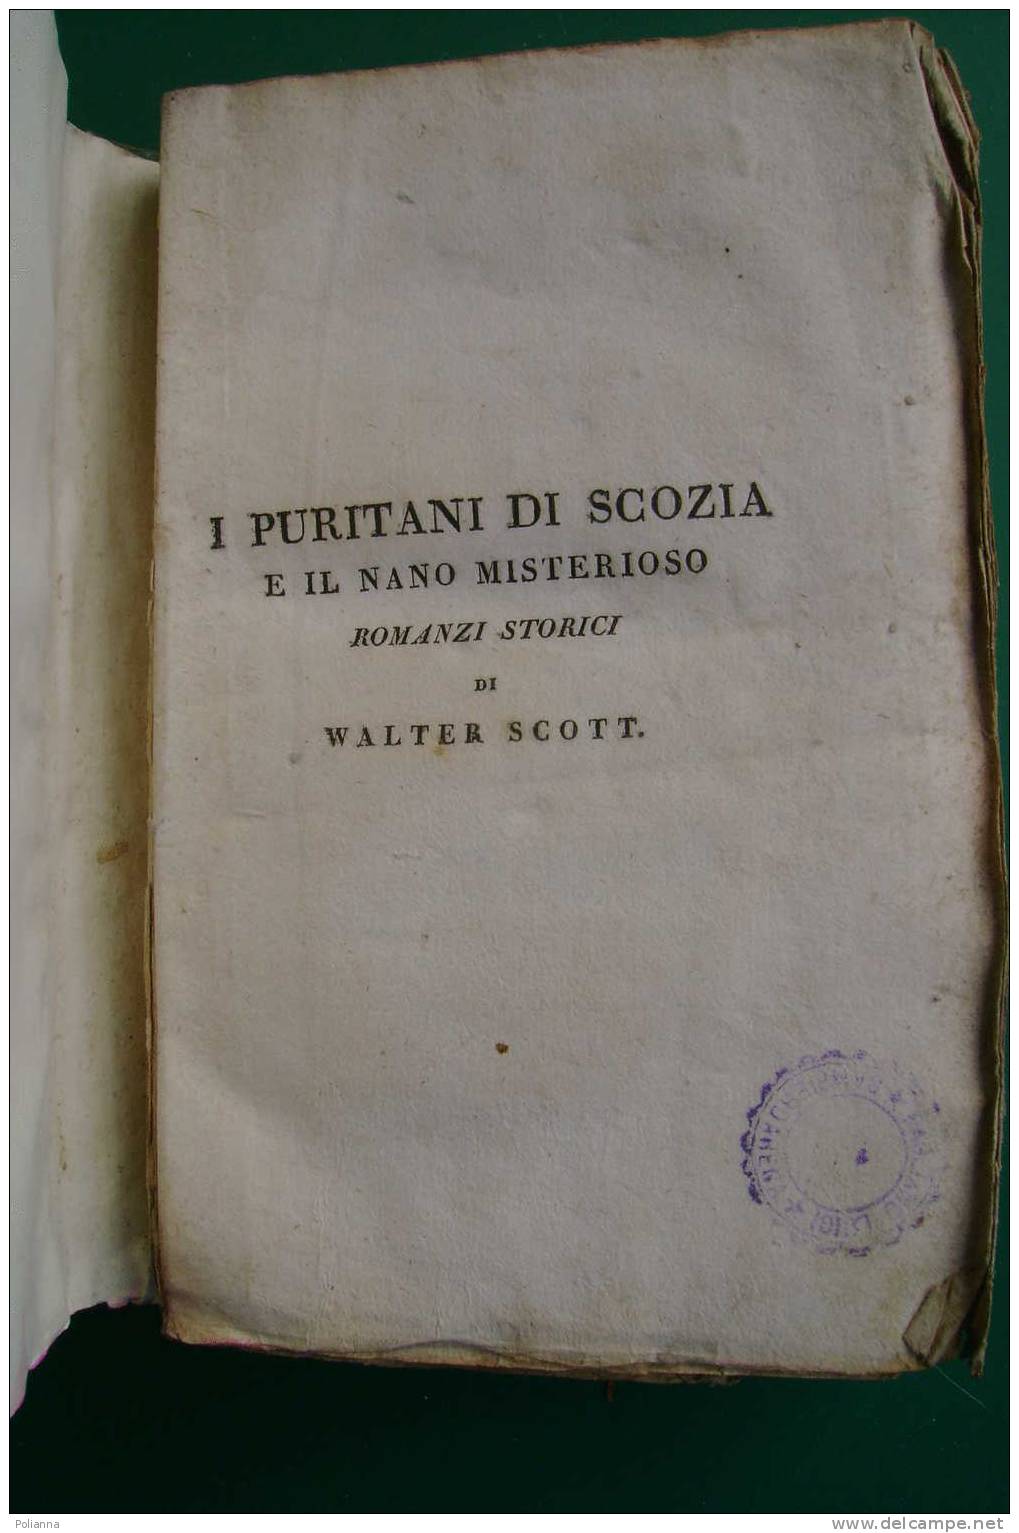 PDE/55 W.Scott I PURITANI DI SCOZIA E IL NANO MISTERIOSO Tomo III - Tipografia Di Commercio 1822 - Anciens